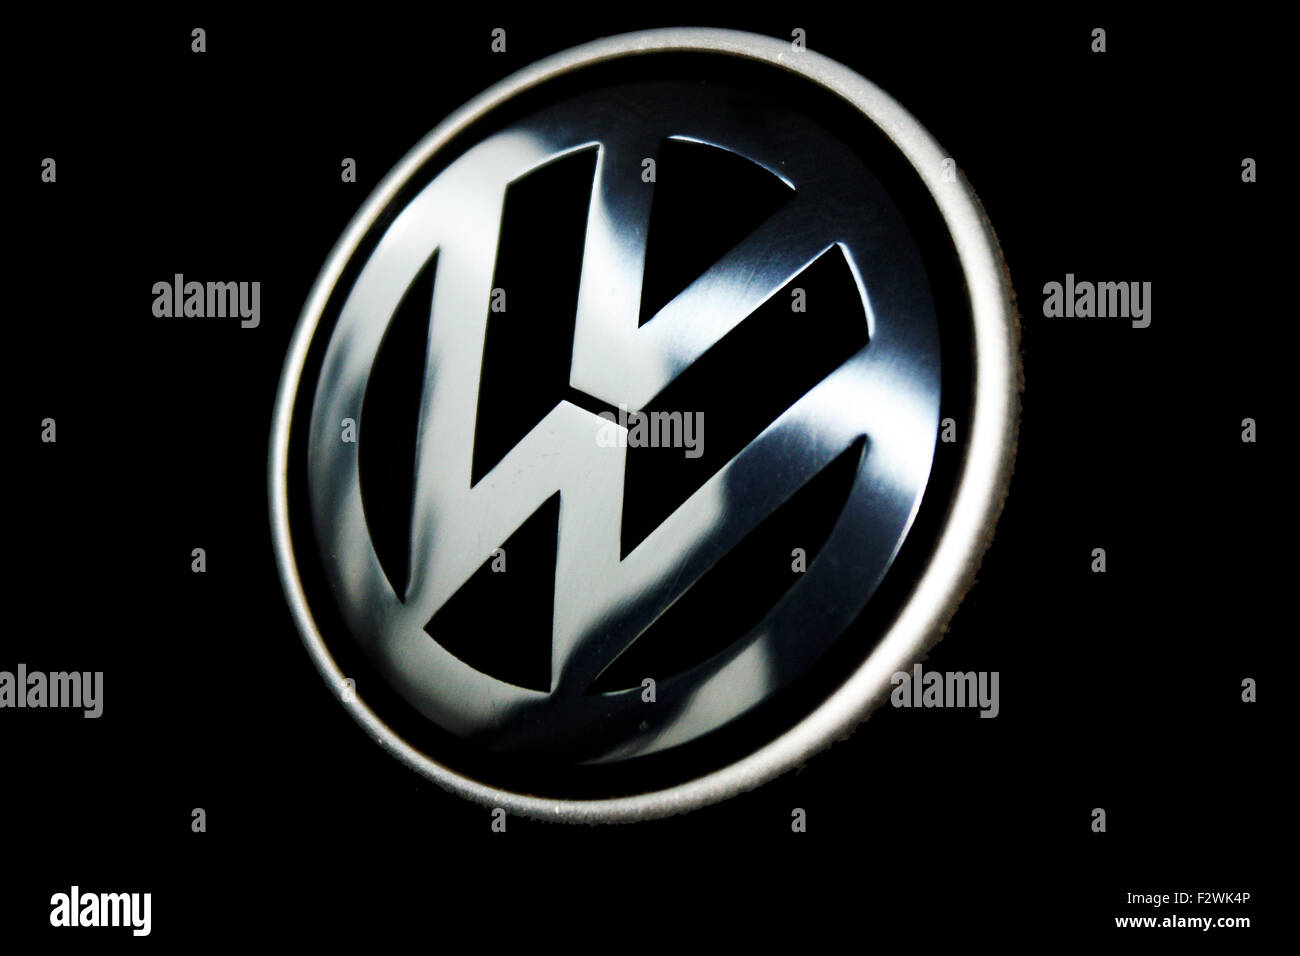 https://c8.alamy.com/compfr/f2wk4p/logo-de-volkswagen-vw-f2wk4p.jpg